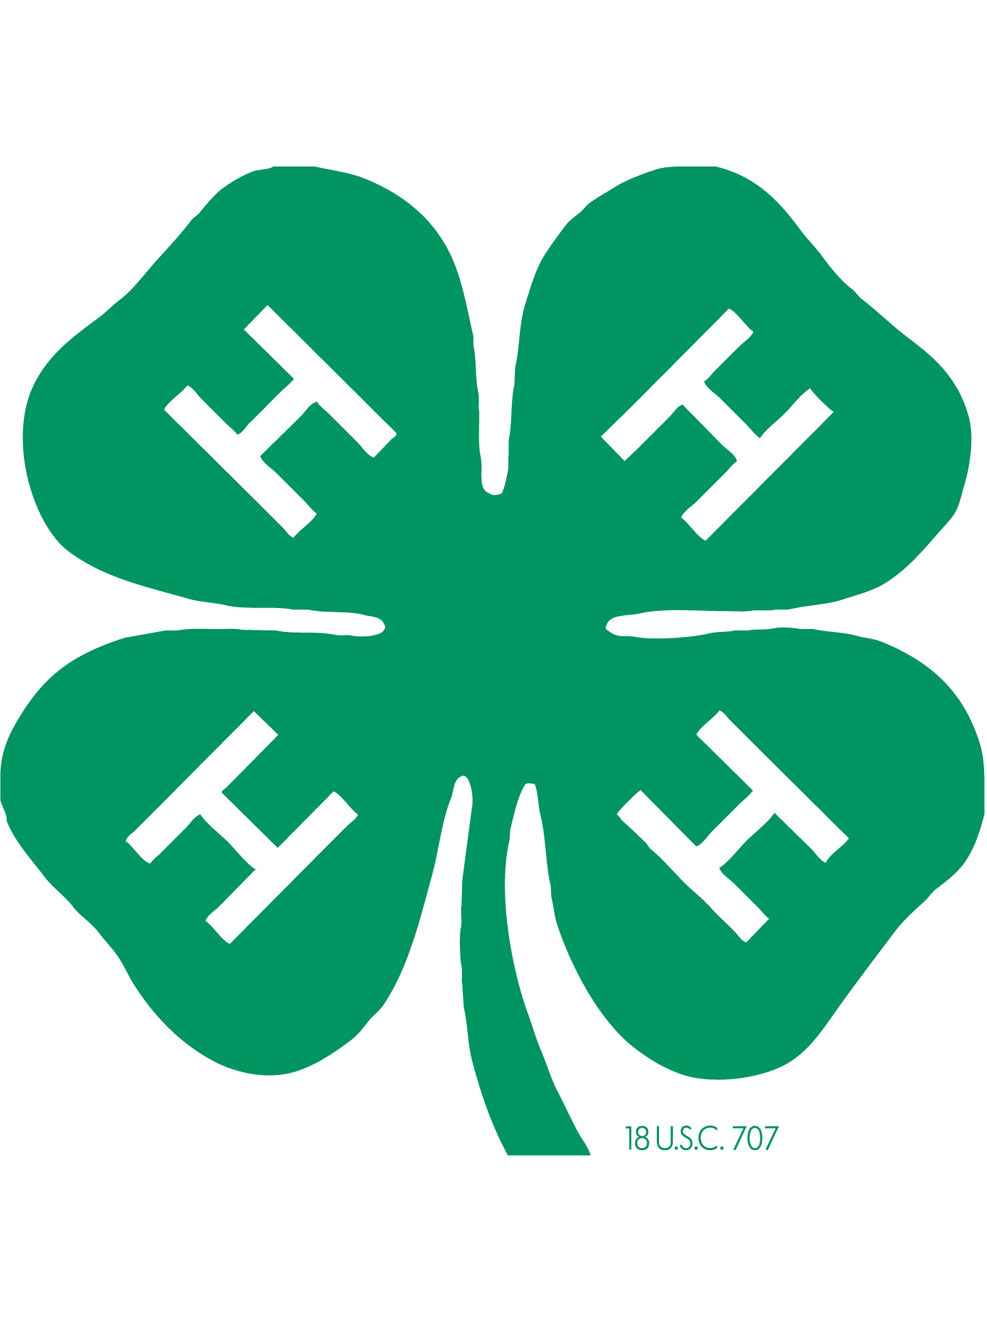 4-H Clover emblem